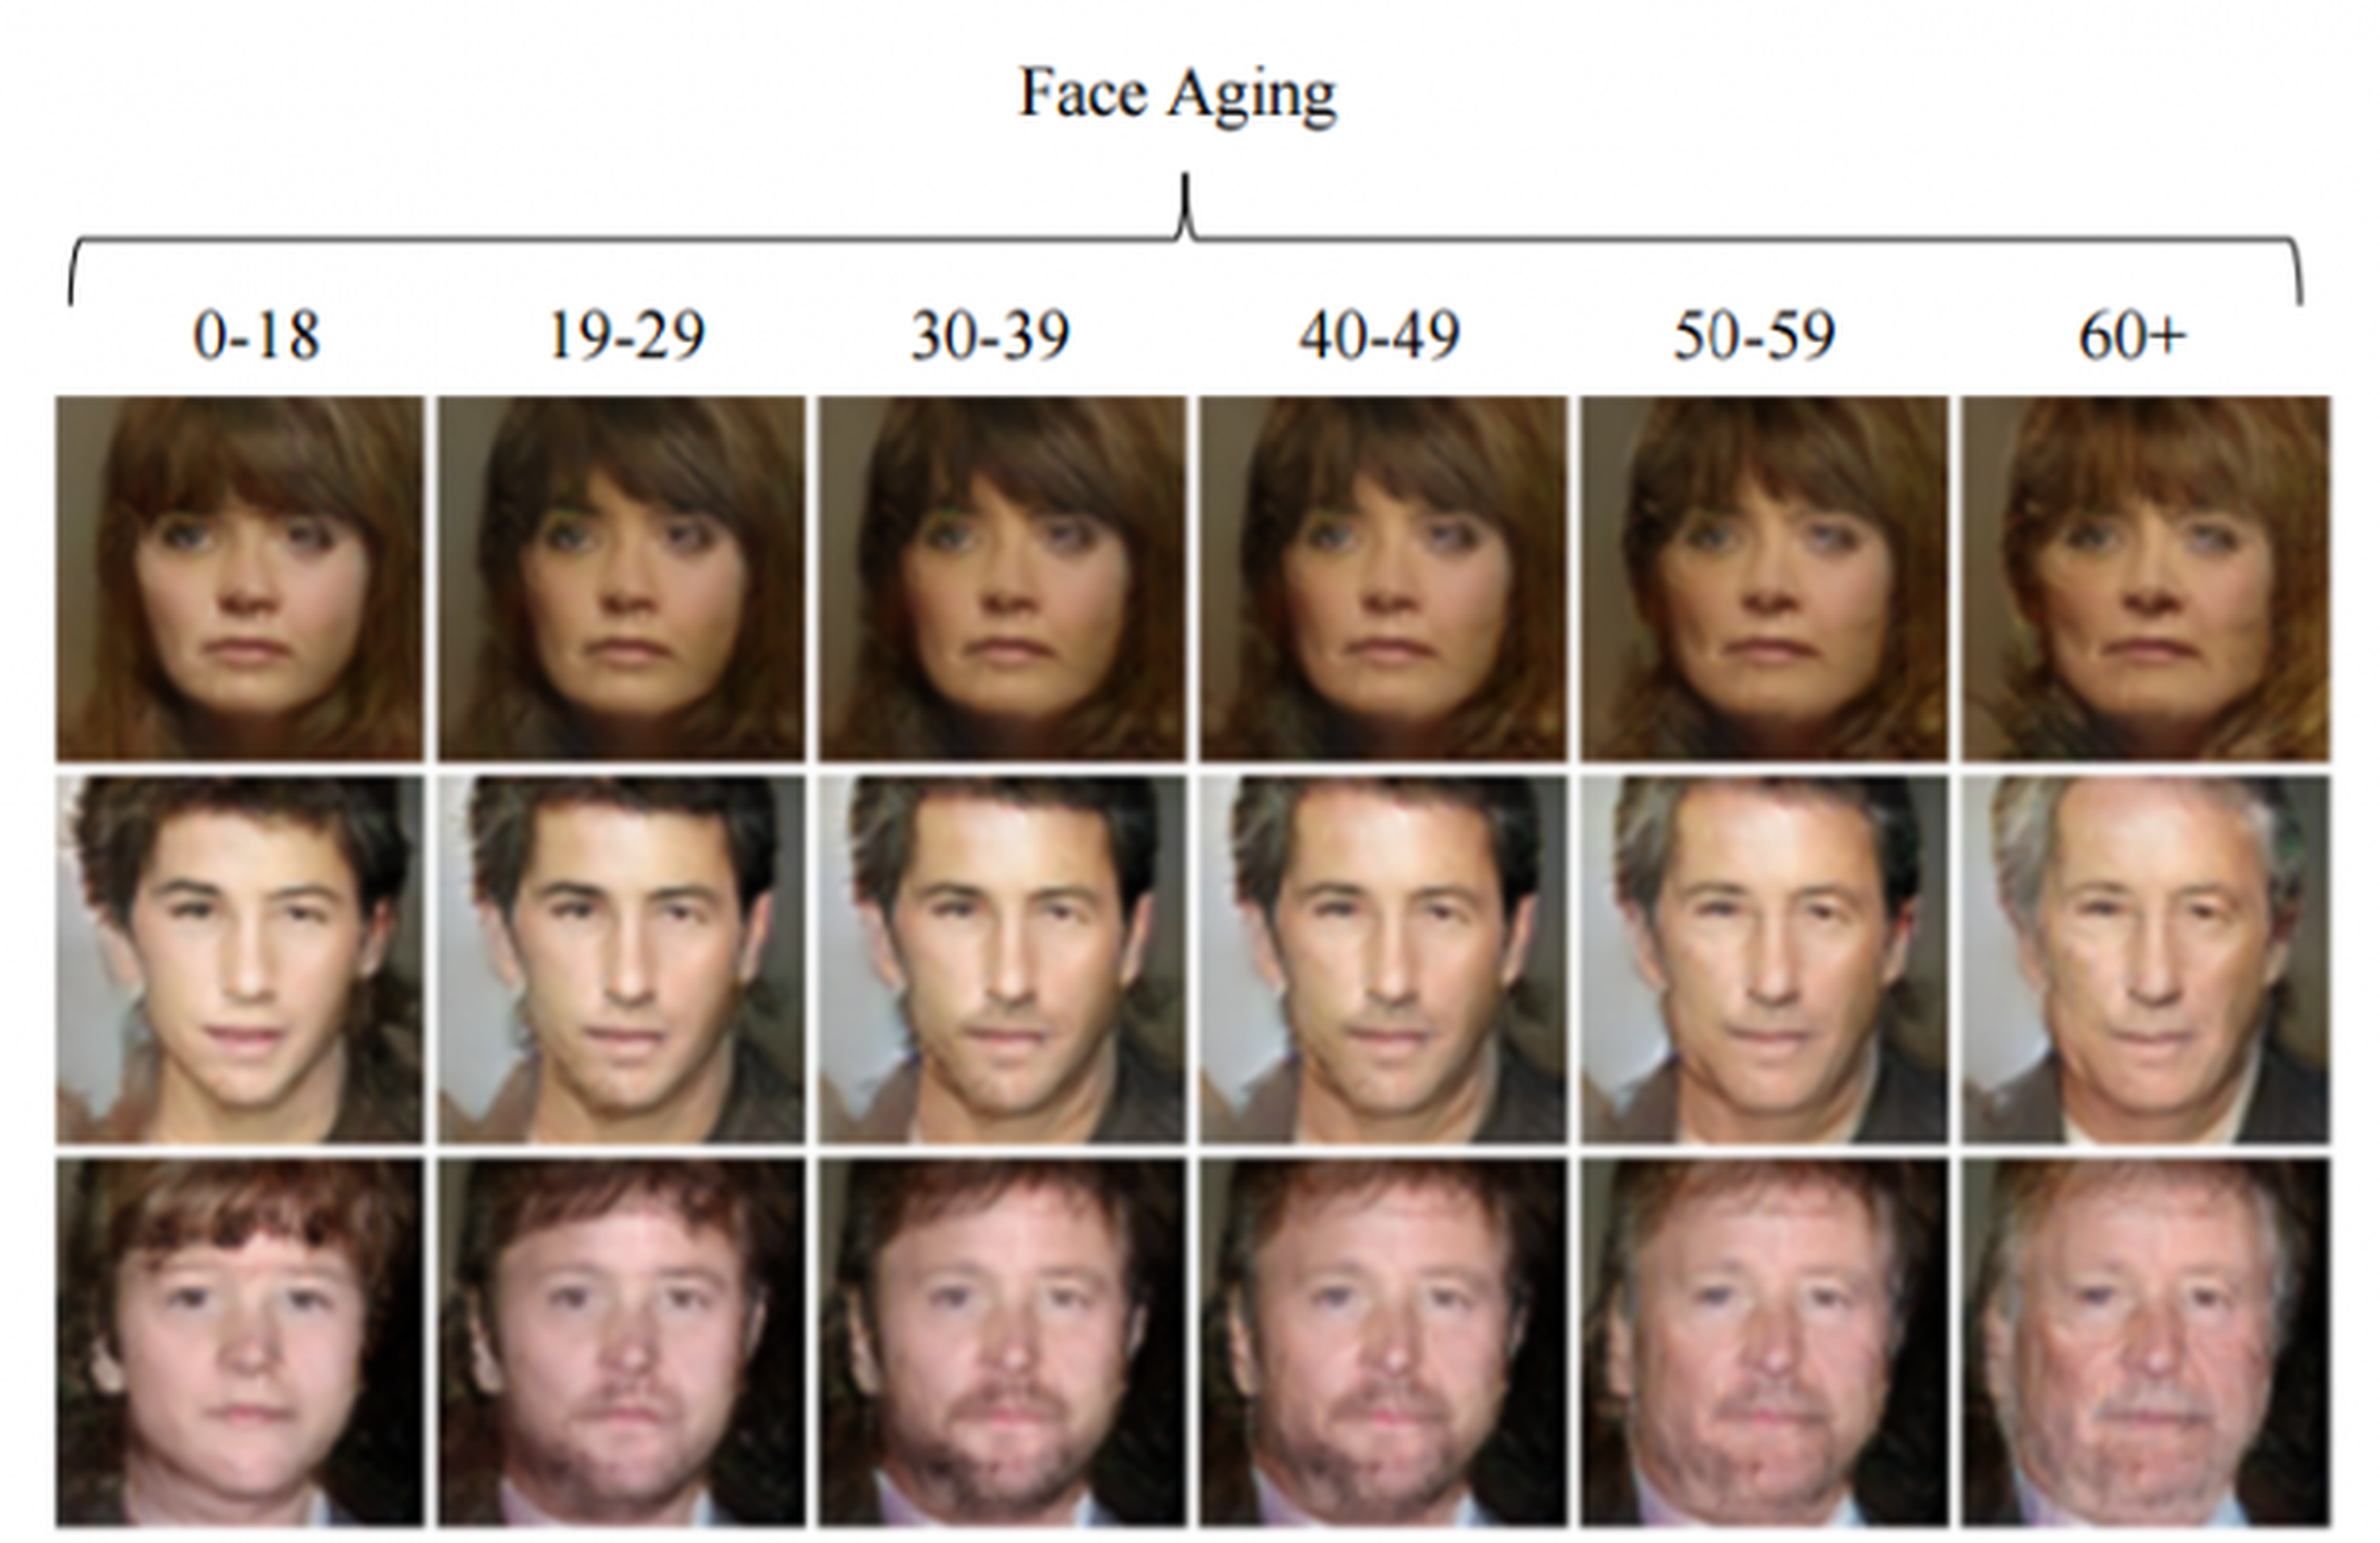 Red neuronal envejecimiento